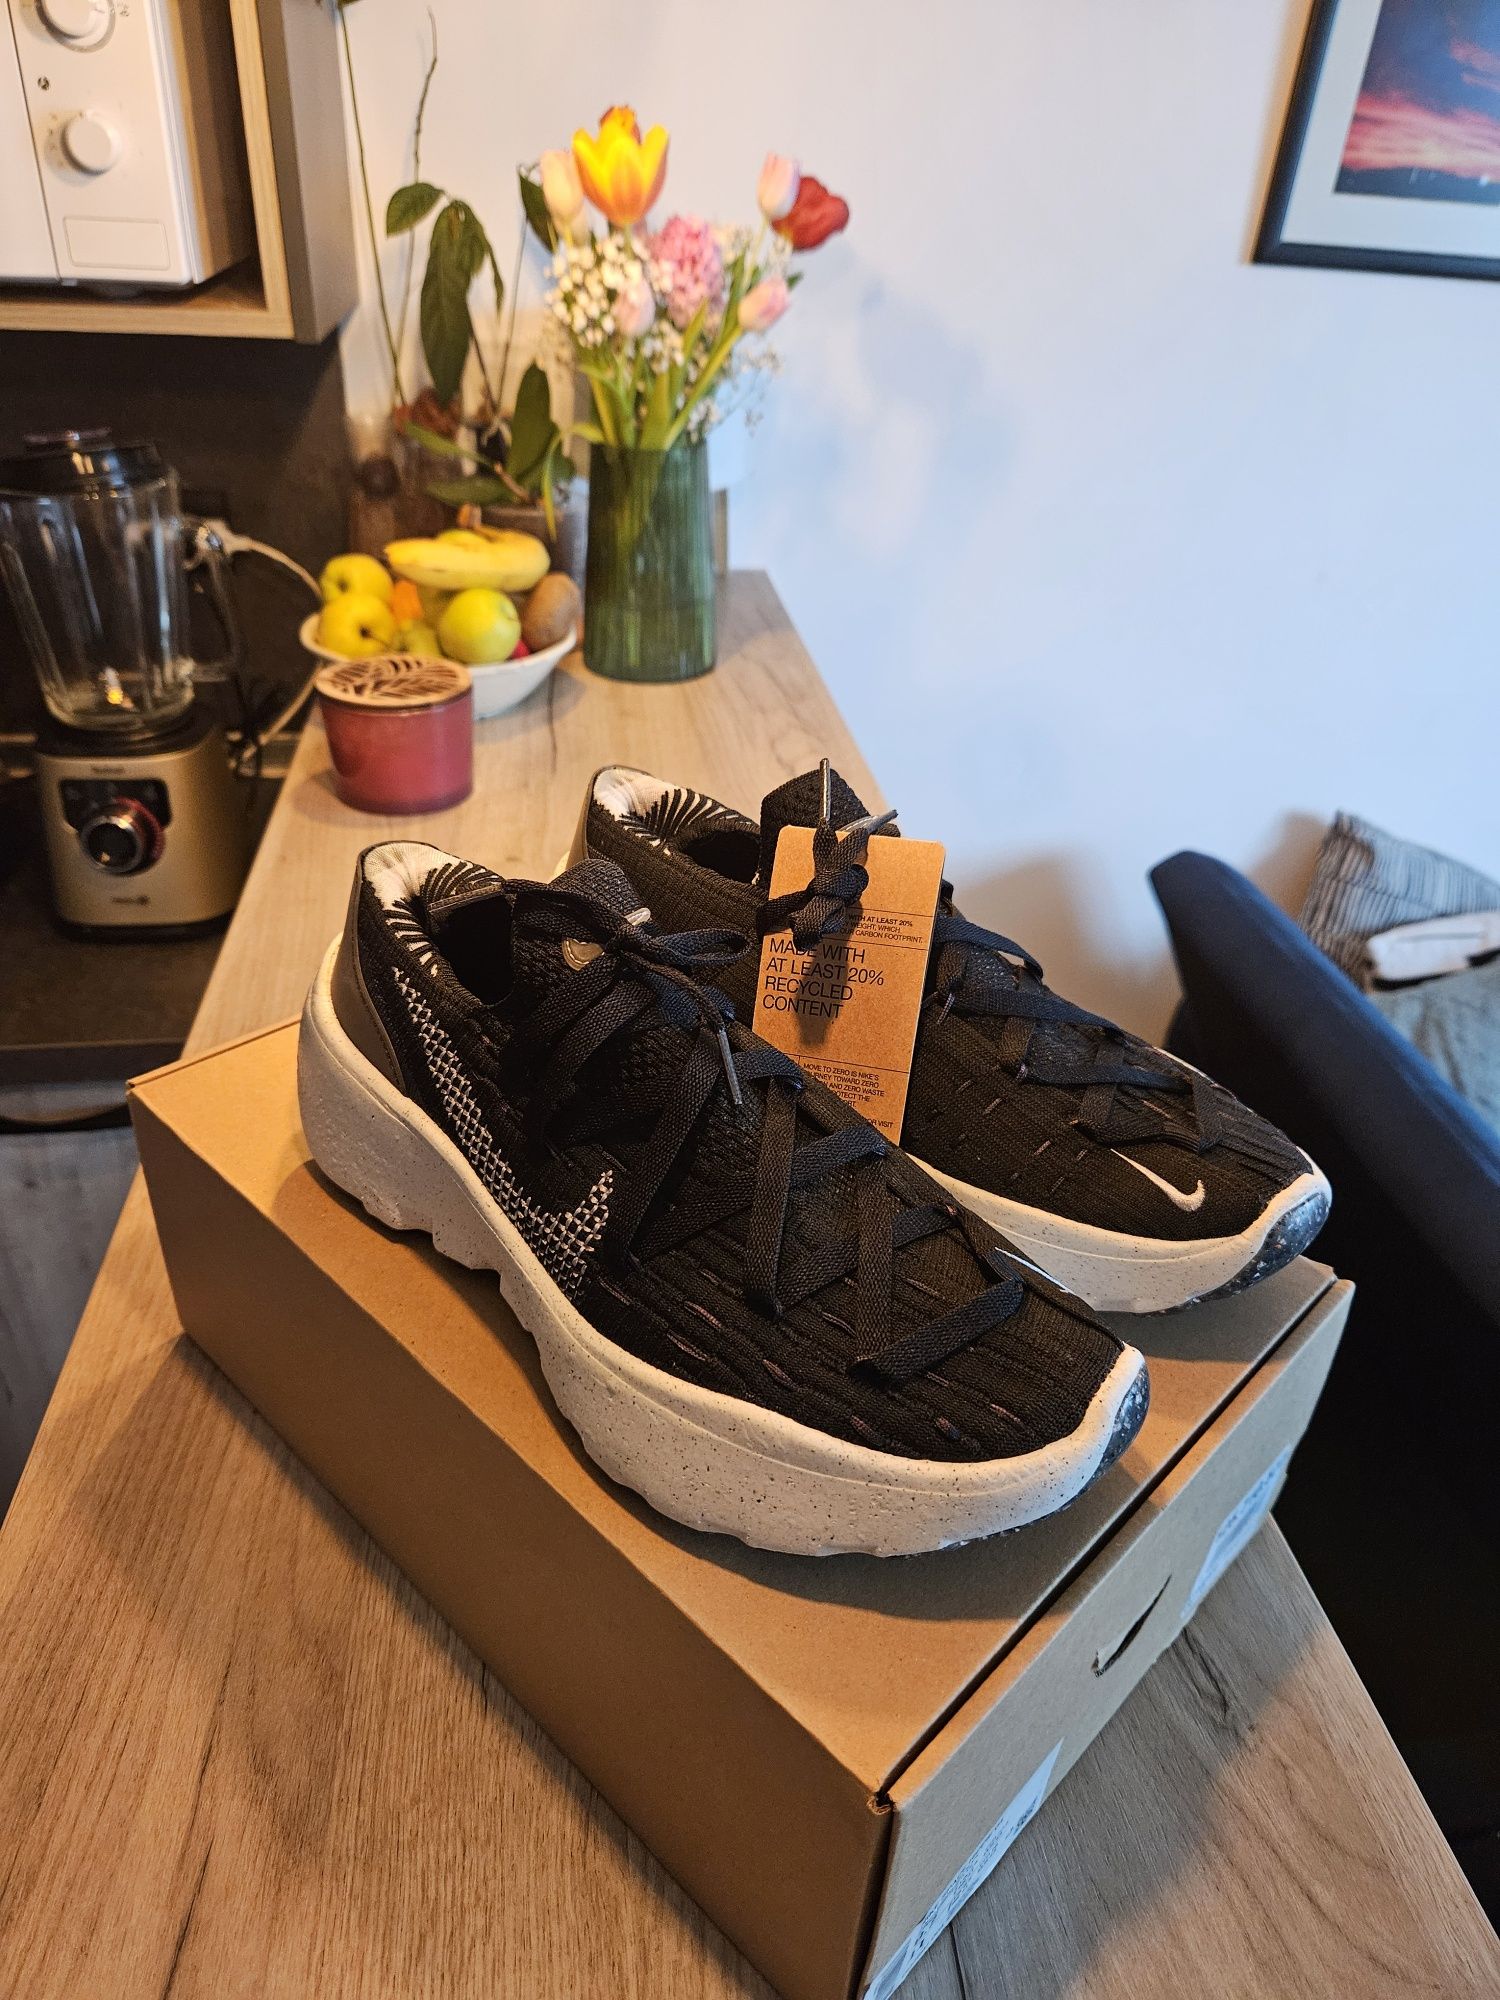 Обувки Nike Space Hippie 04, размер 41, 43, 45